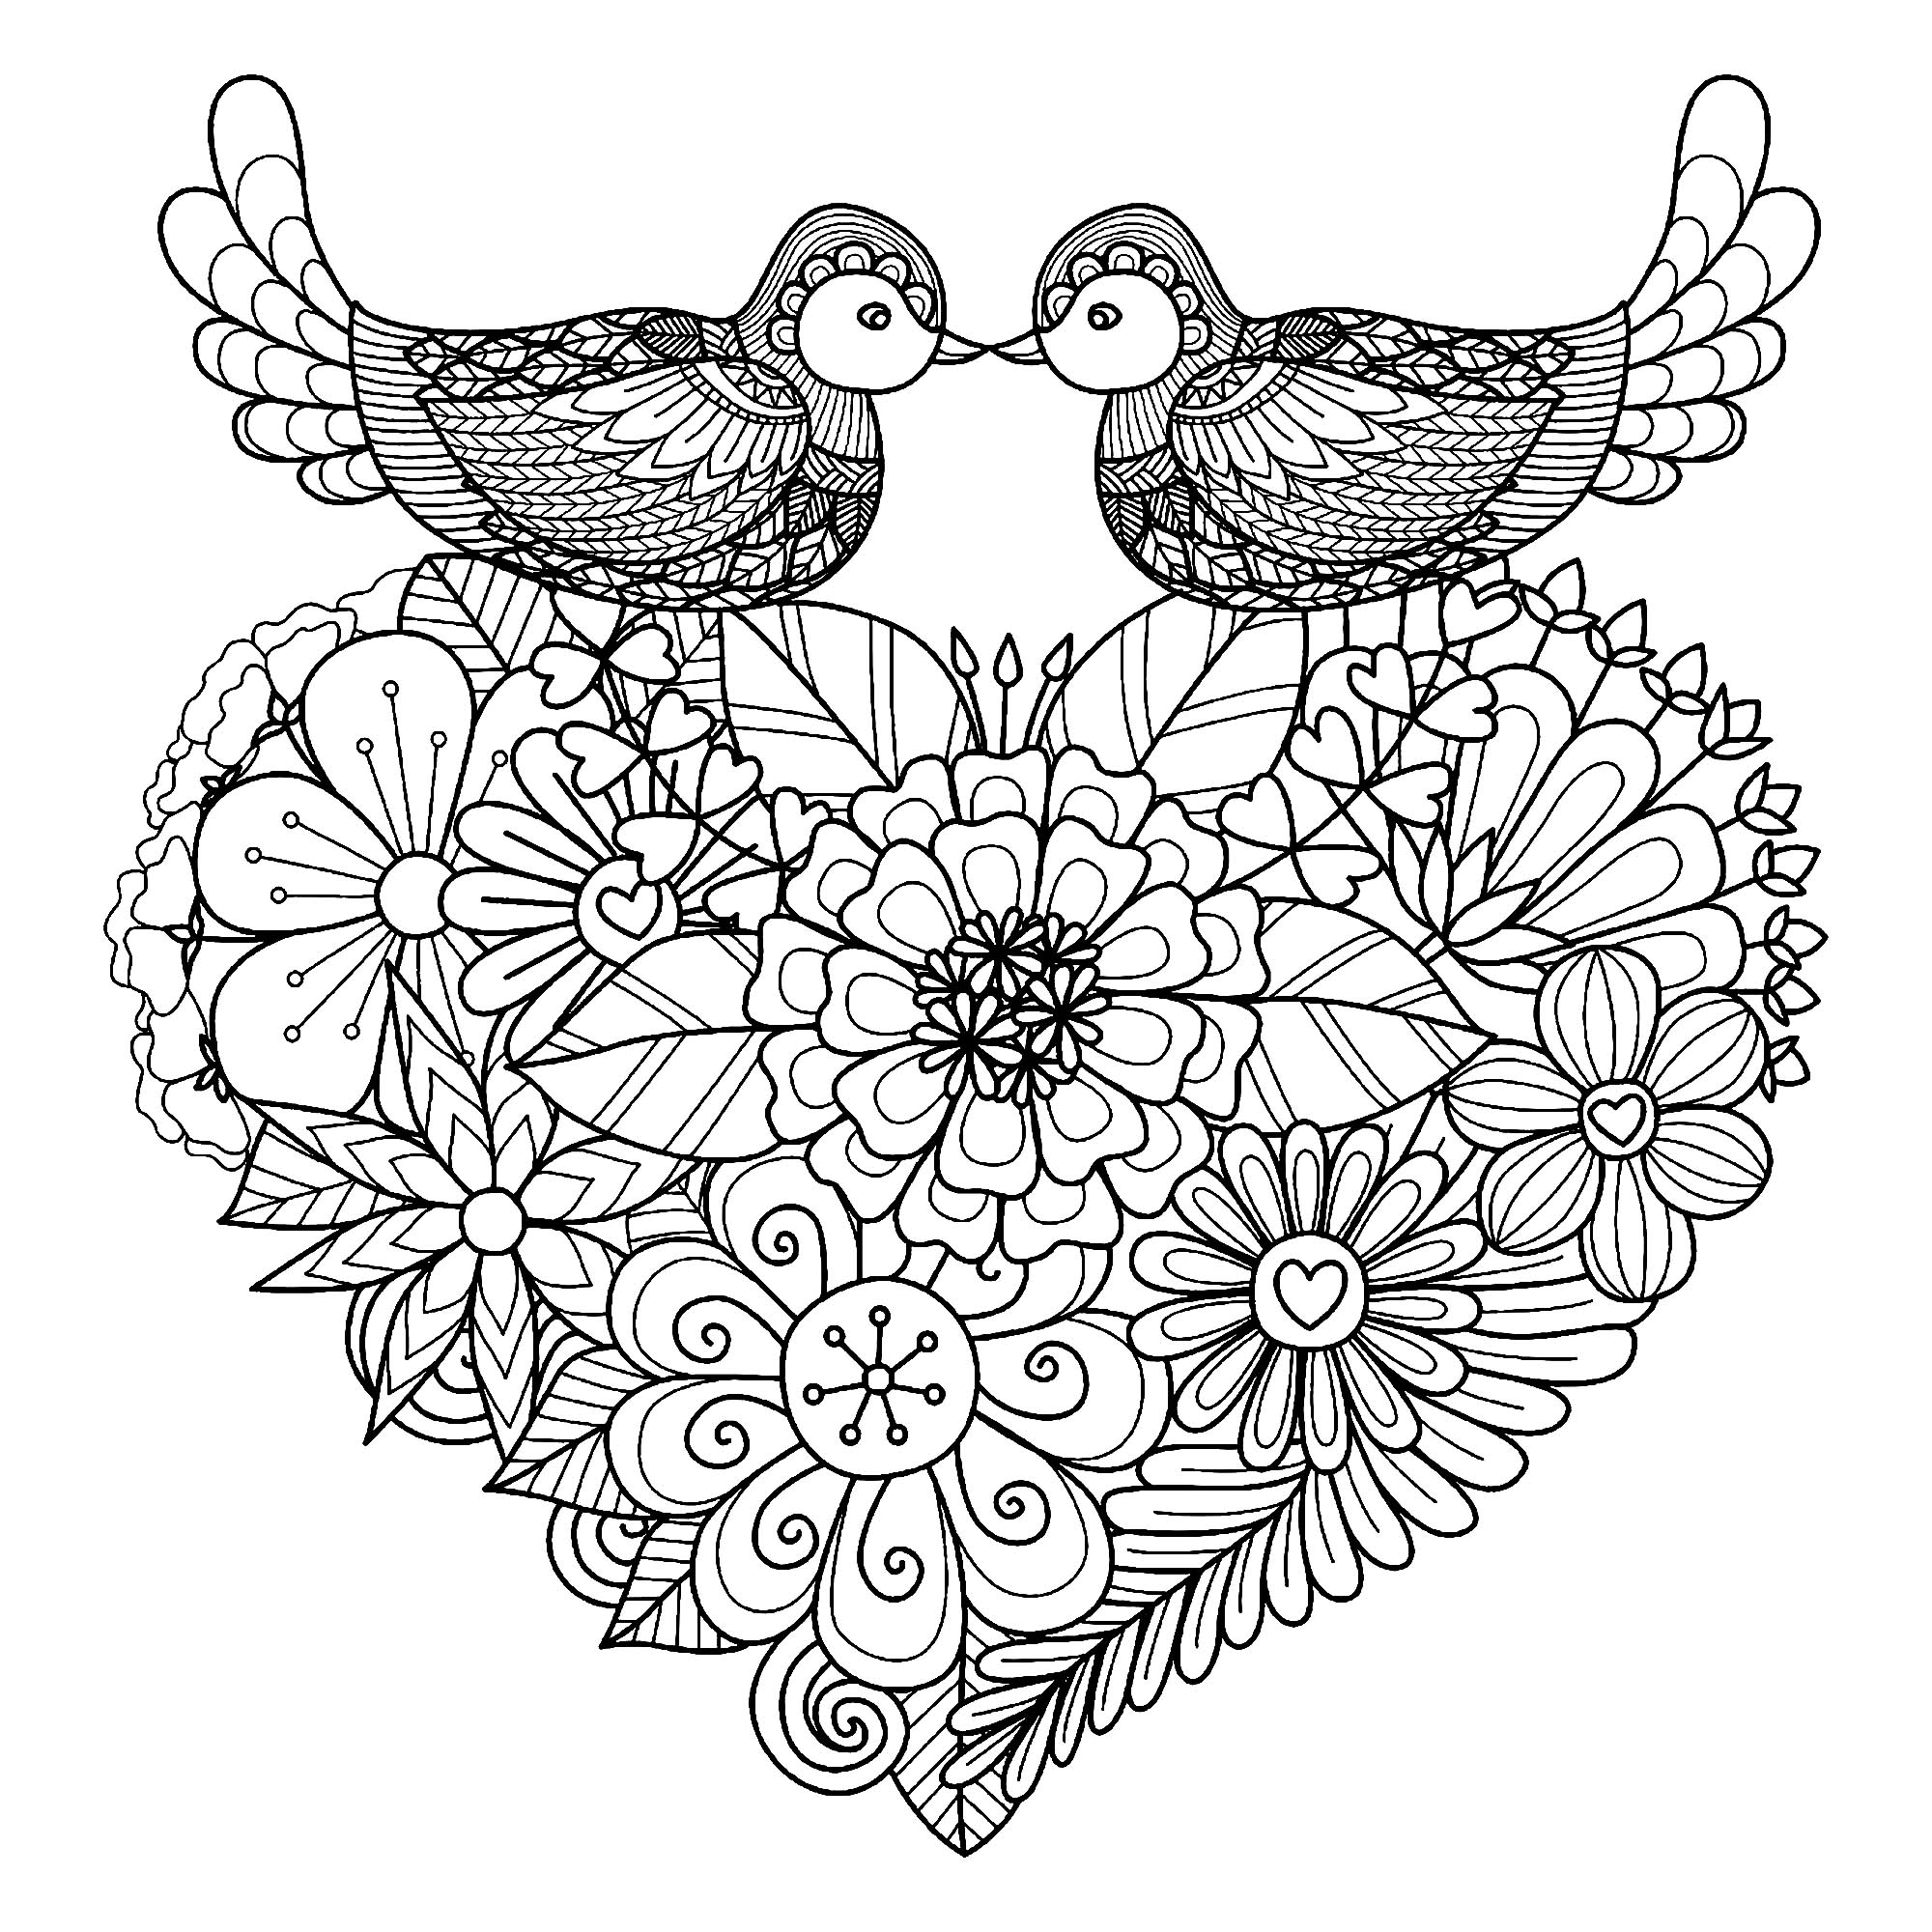 Deux oiseaux symétriques avec de beaux motifs, posés sur un coeur plein de fleurs, Artiste : Bimdeedee   Source : 123rf